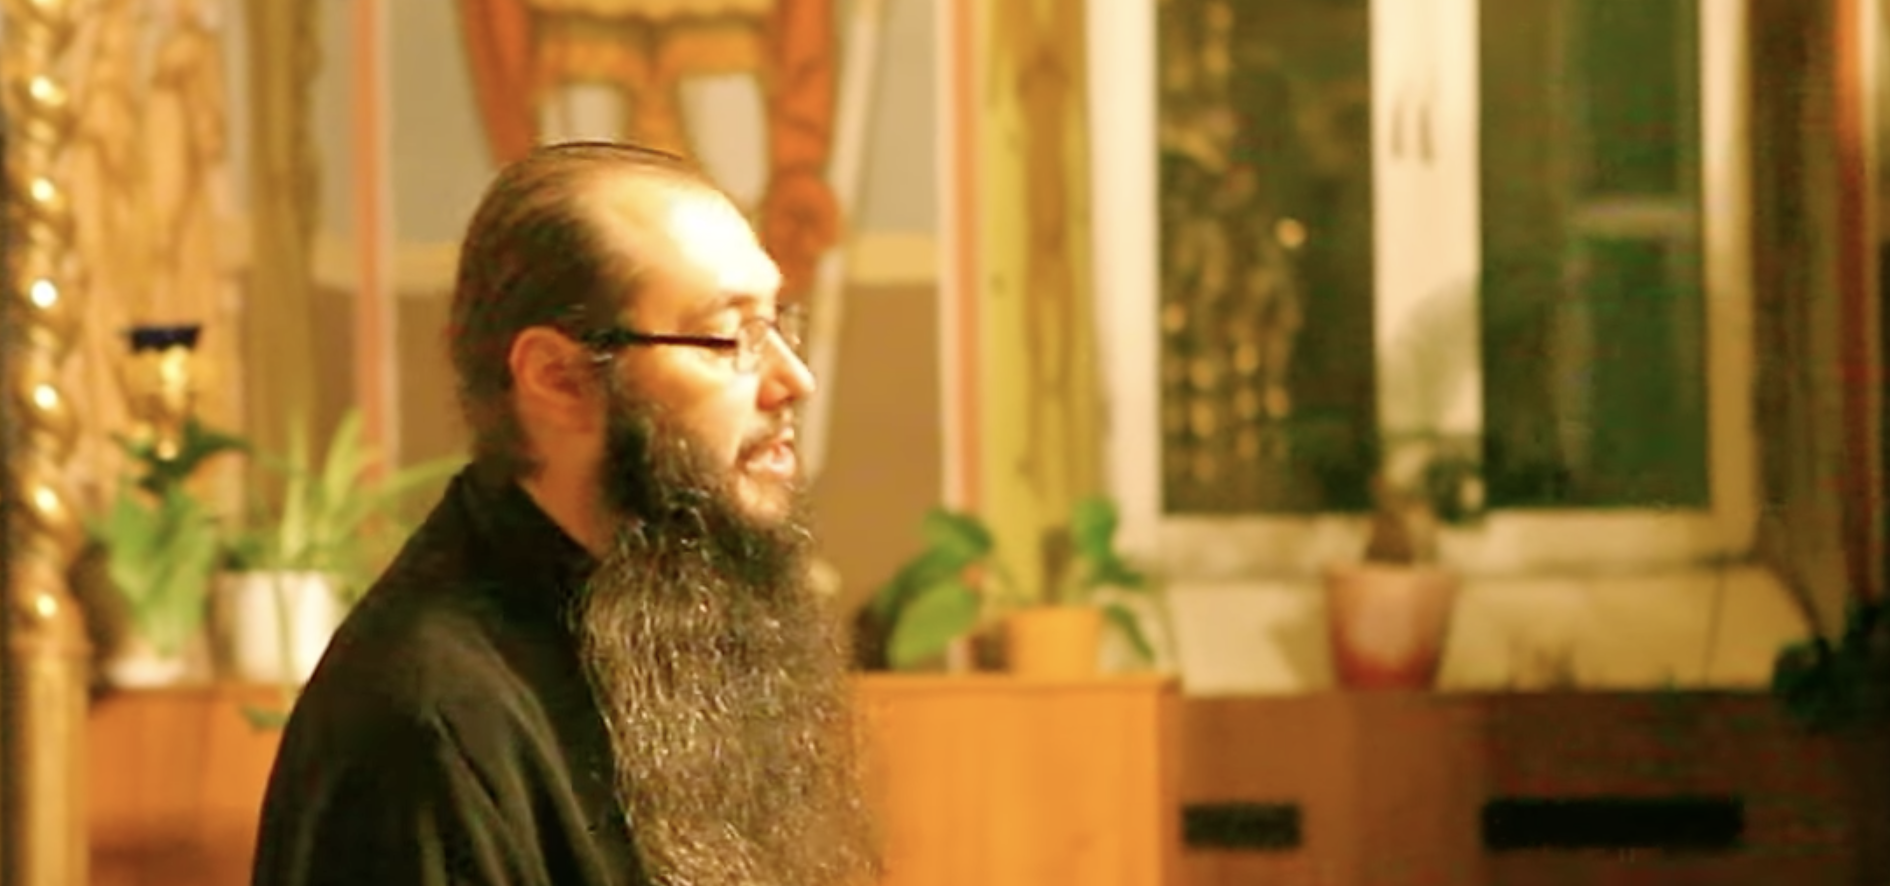 Petru Pruteanu est responsable des communautés orthodoxes russes en Espagne et au Portugal | capture d'écran YouTube